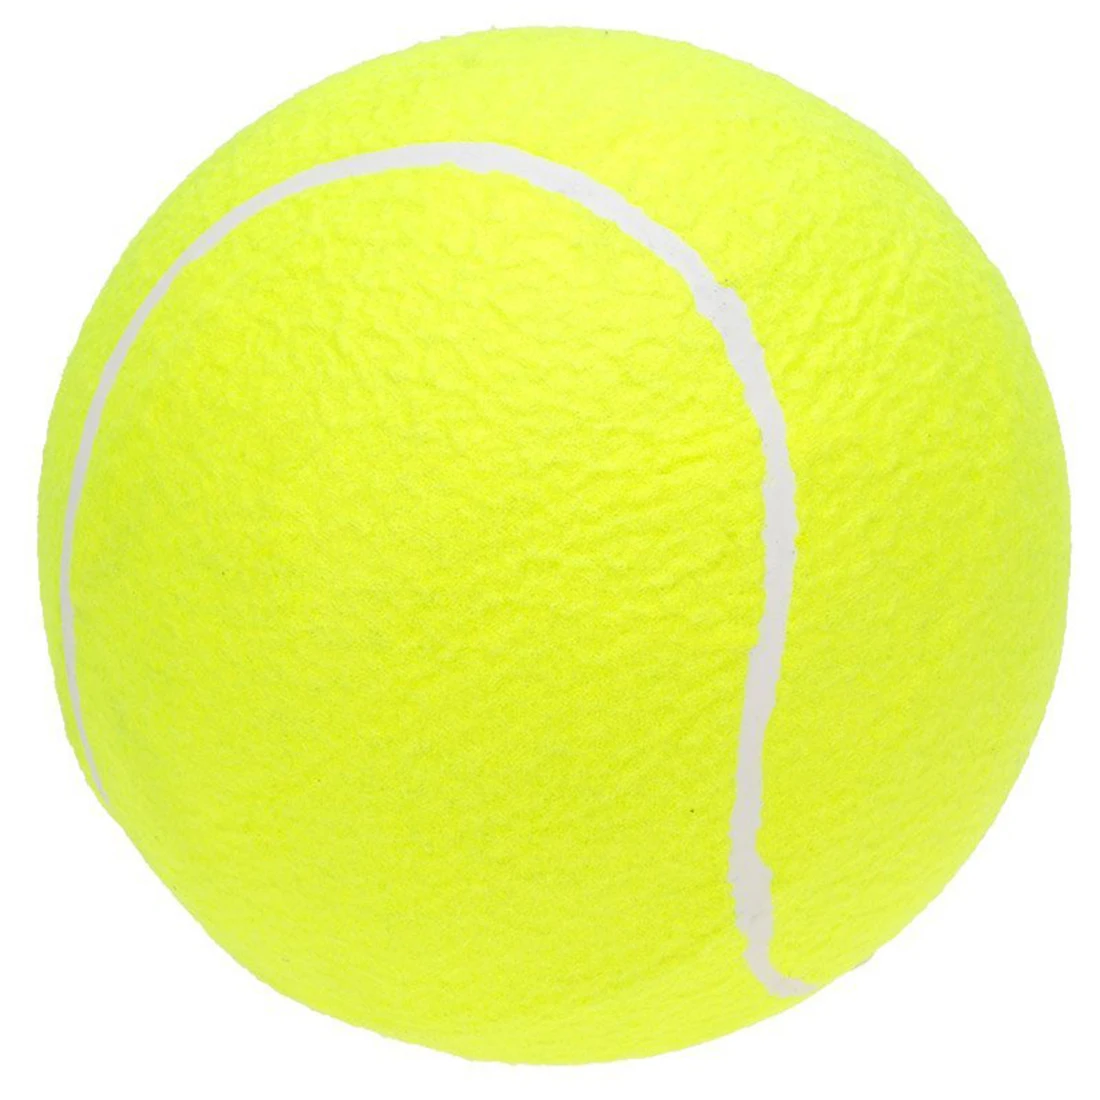 9," большой гигантский Теннисный мяч для детей и взрослых веселый, для животных